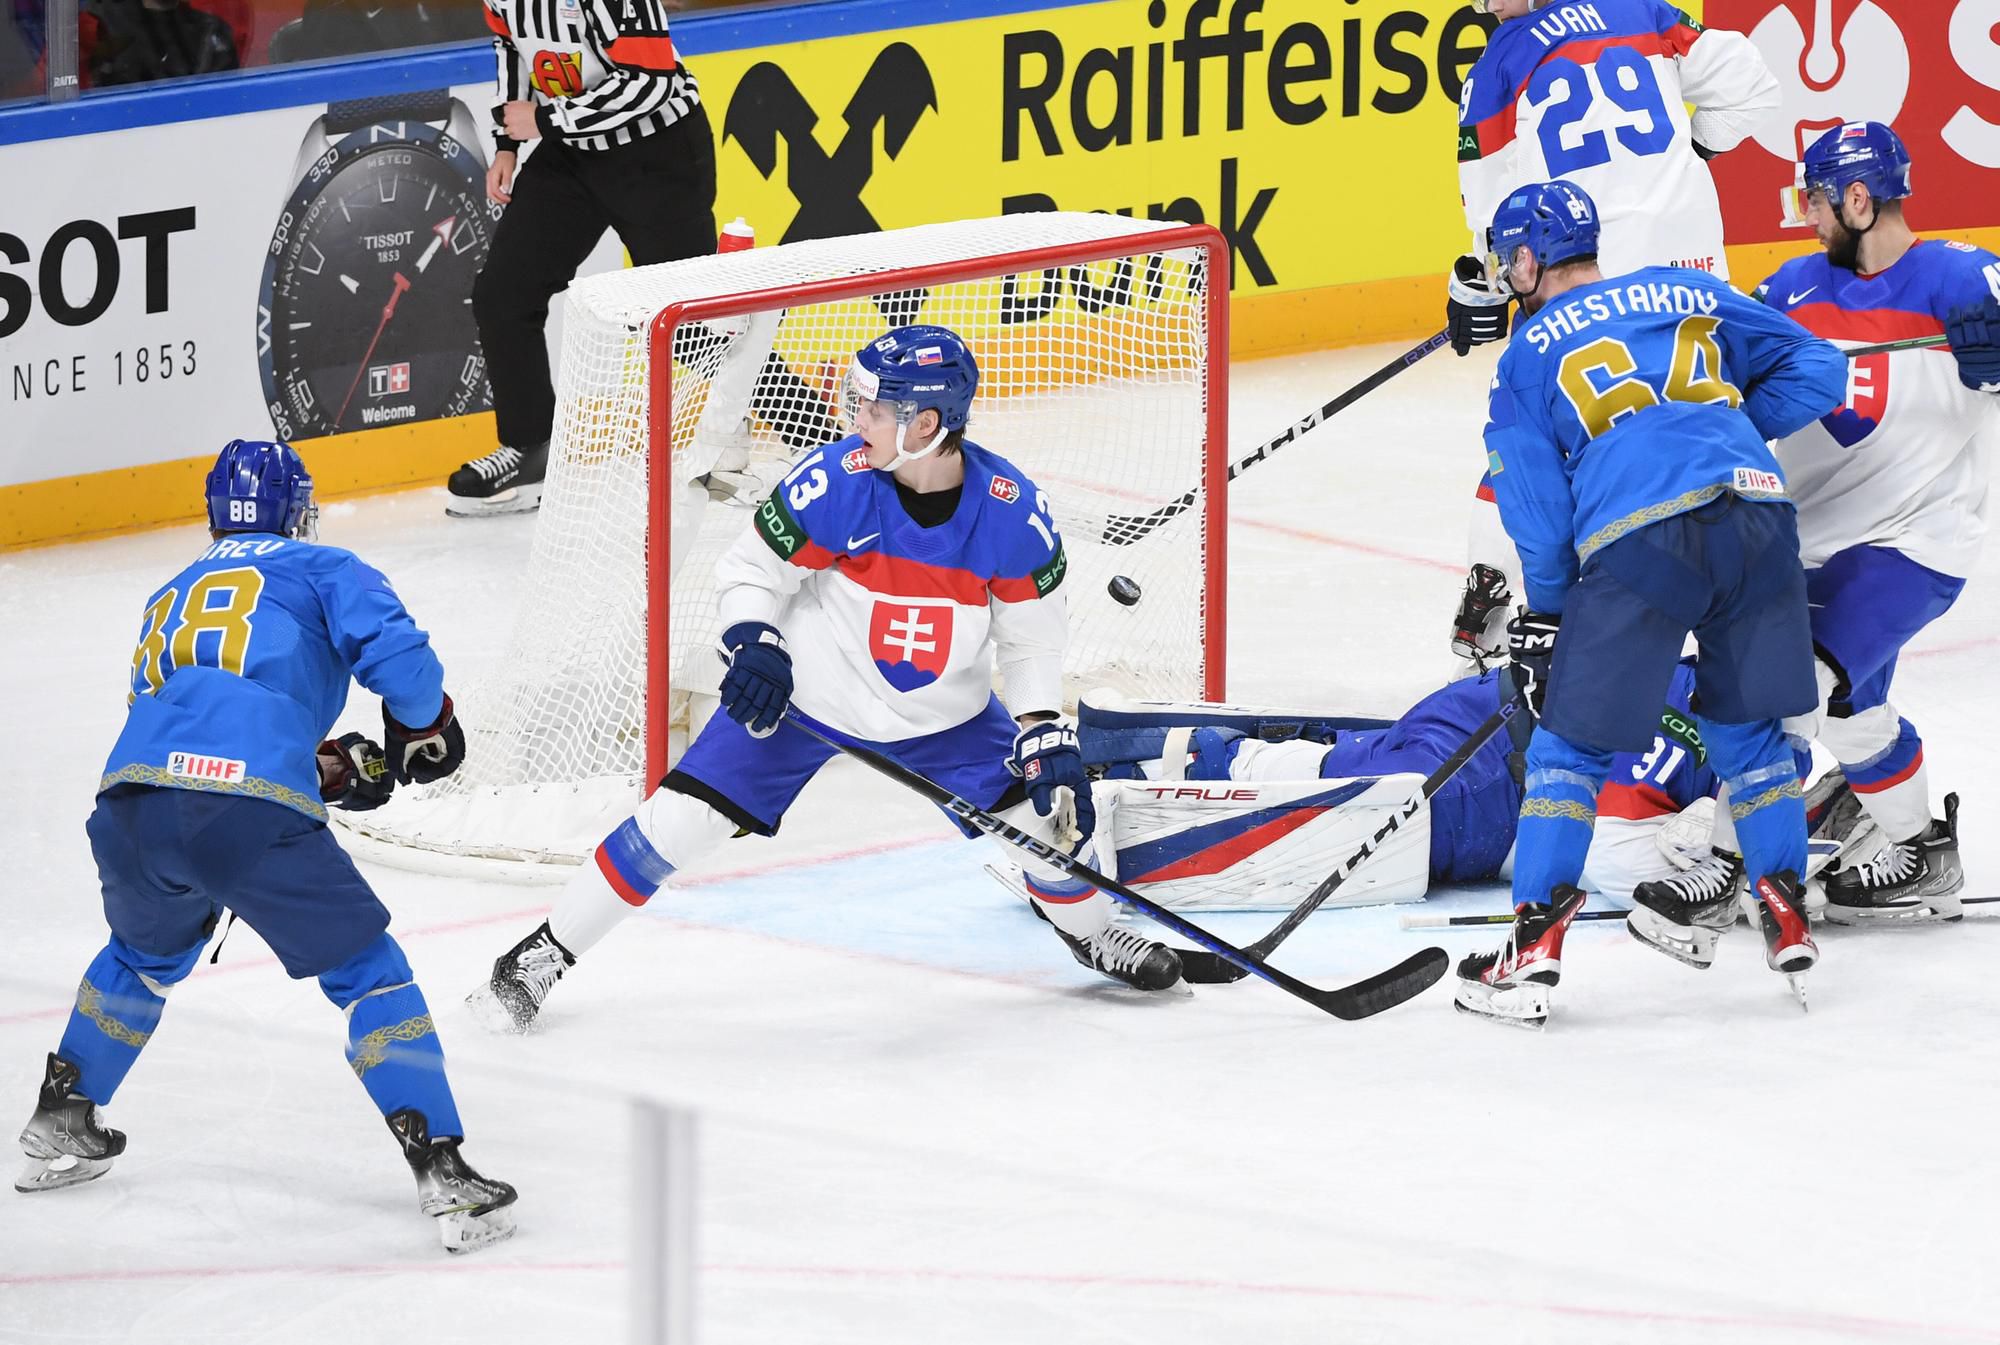 MS v hokeji 2023: Kazachstan - Slovensko (Jevgenij Rymarev strieľa gól na 3:1,  v popredí František Gajdoš, Kirill Savicki a Samuel Hlavaj)